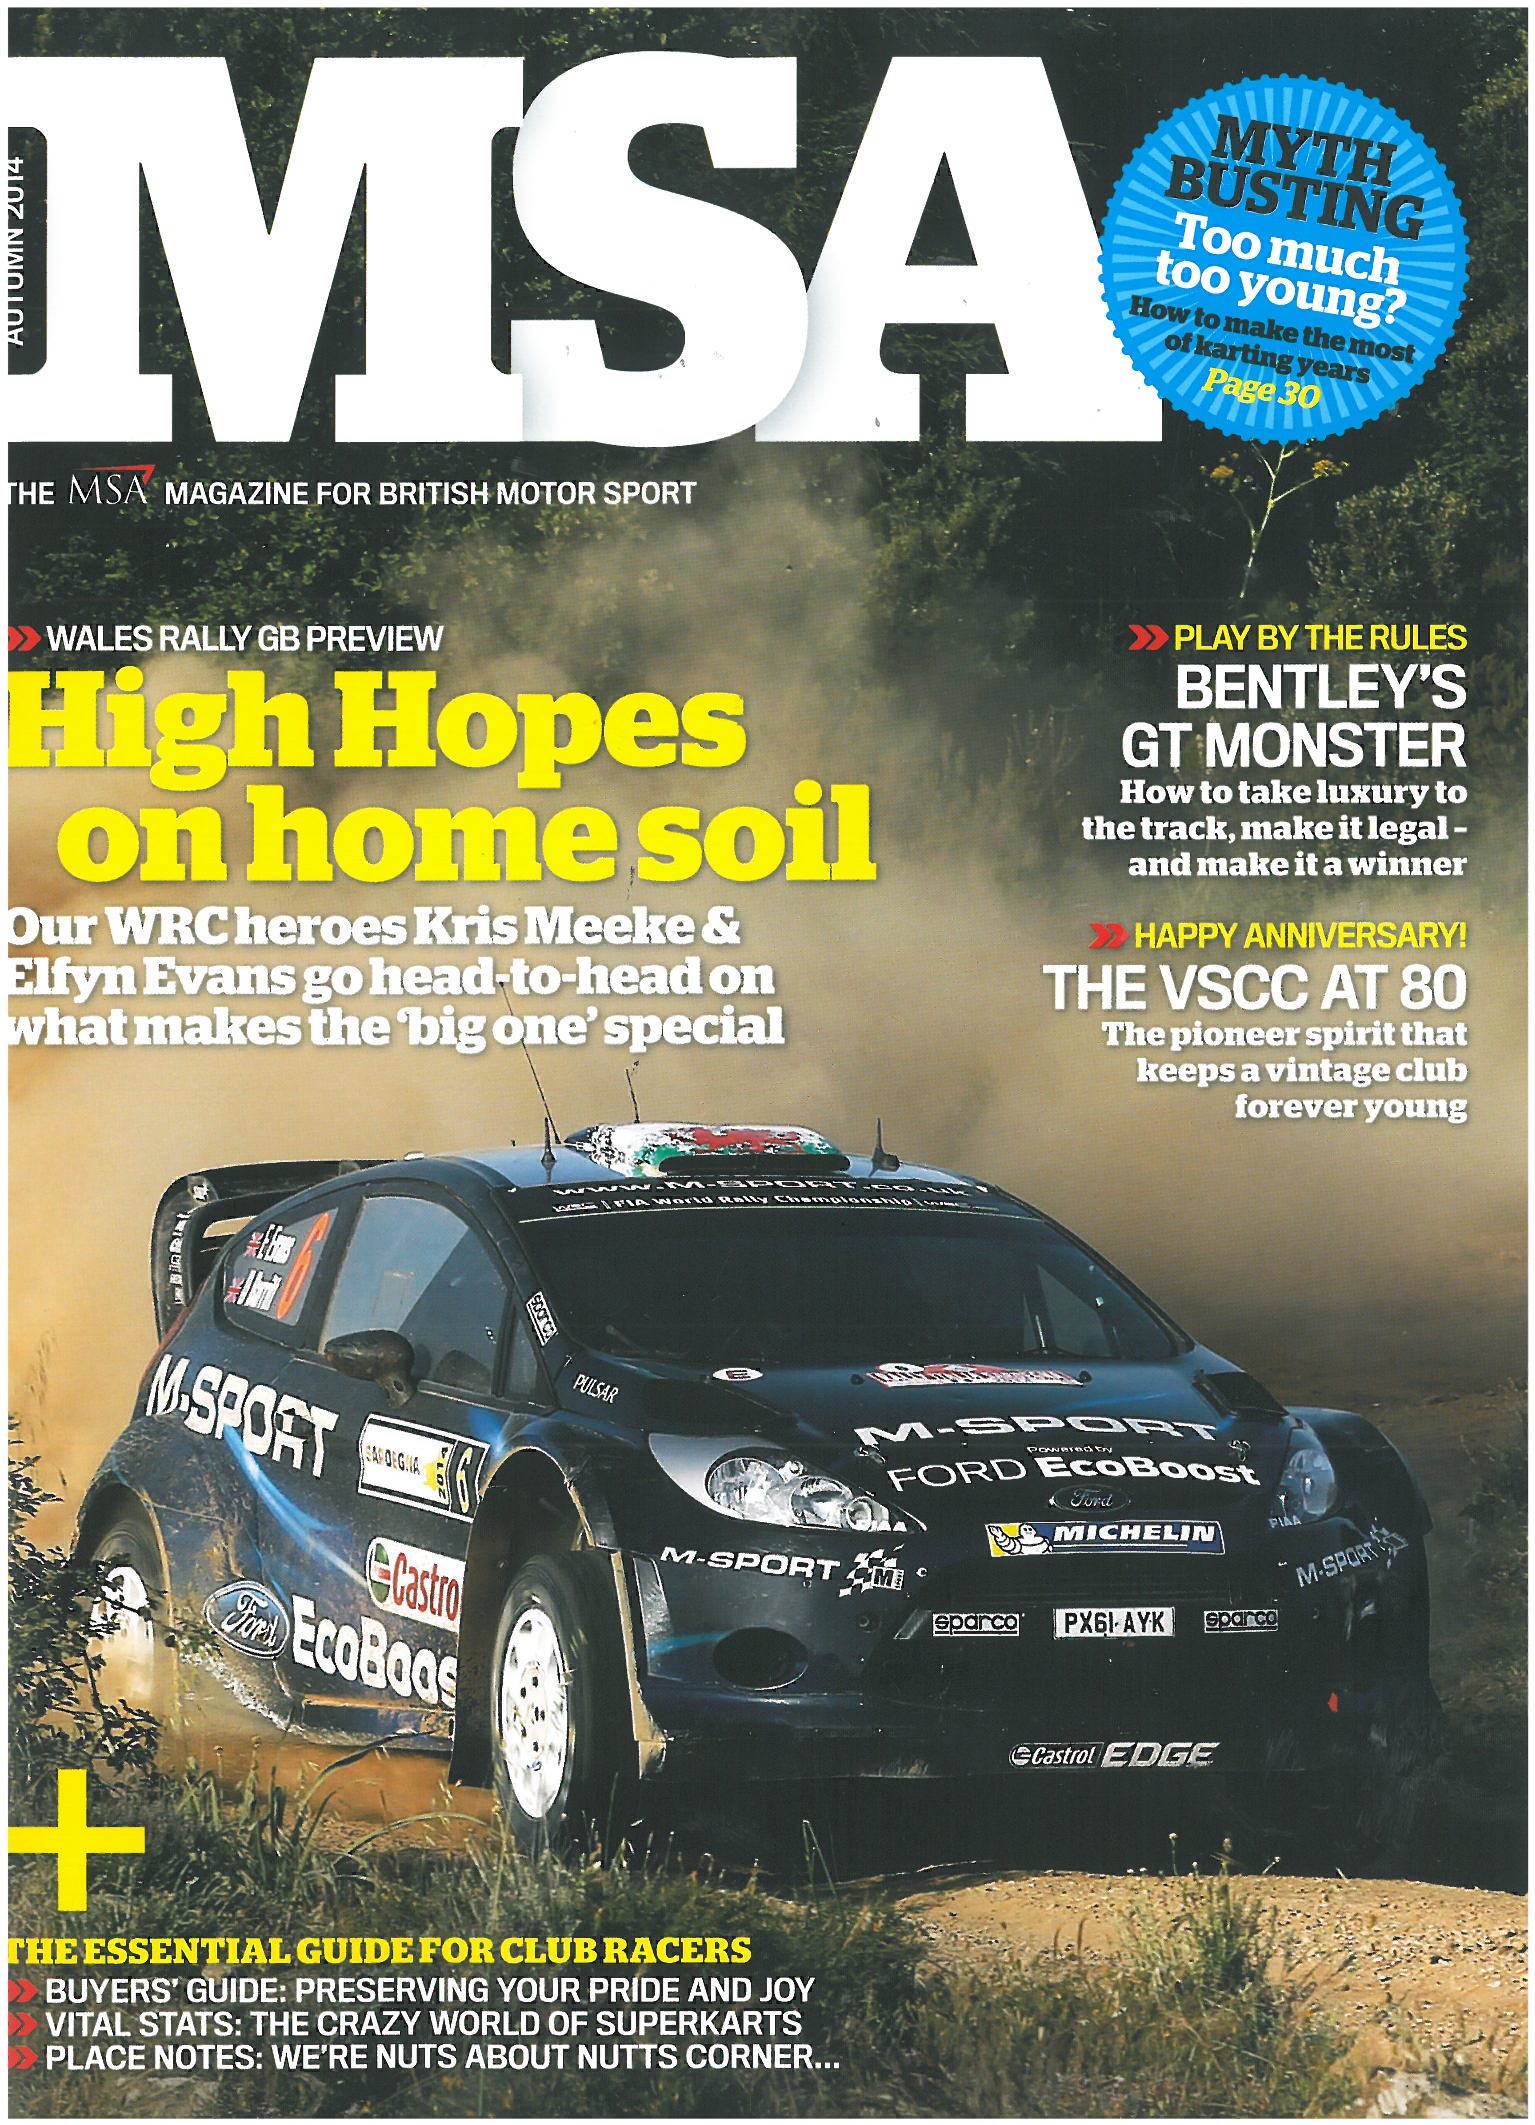 VSCC featured in MSA Magazine cover